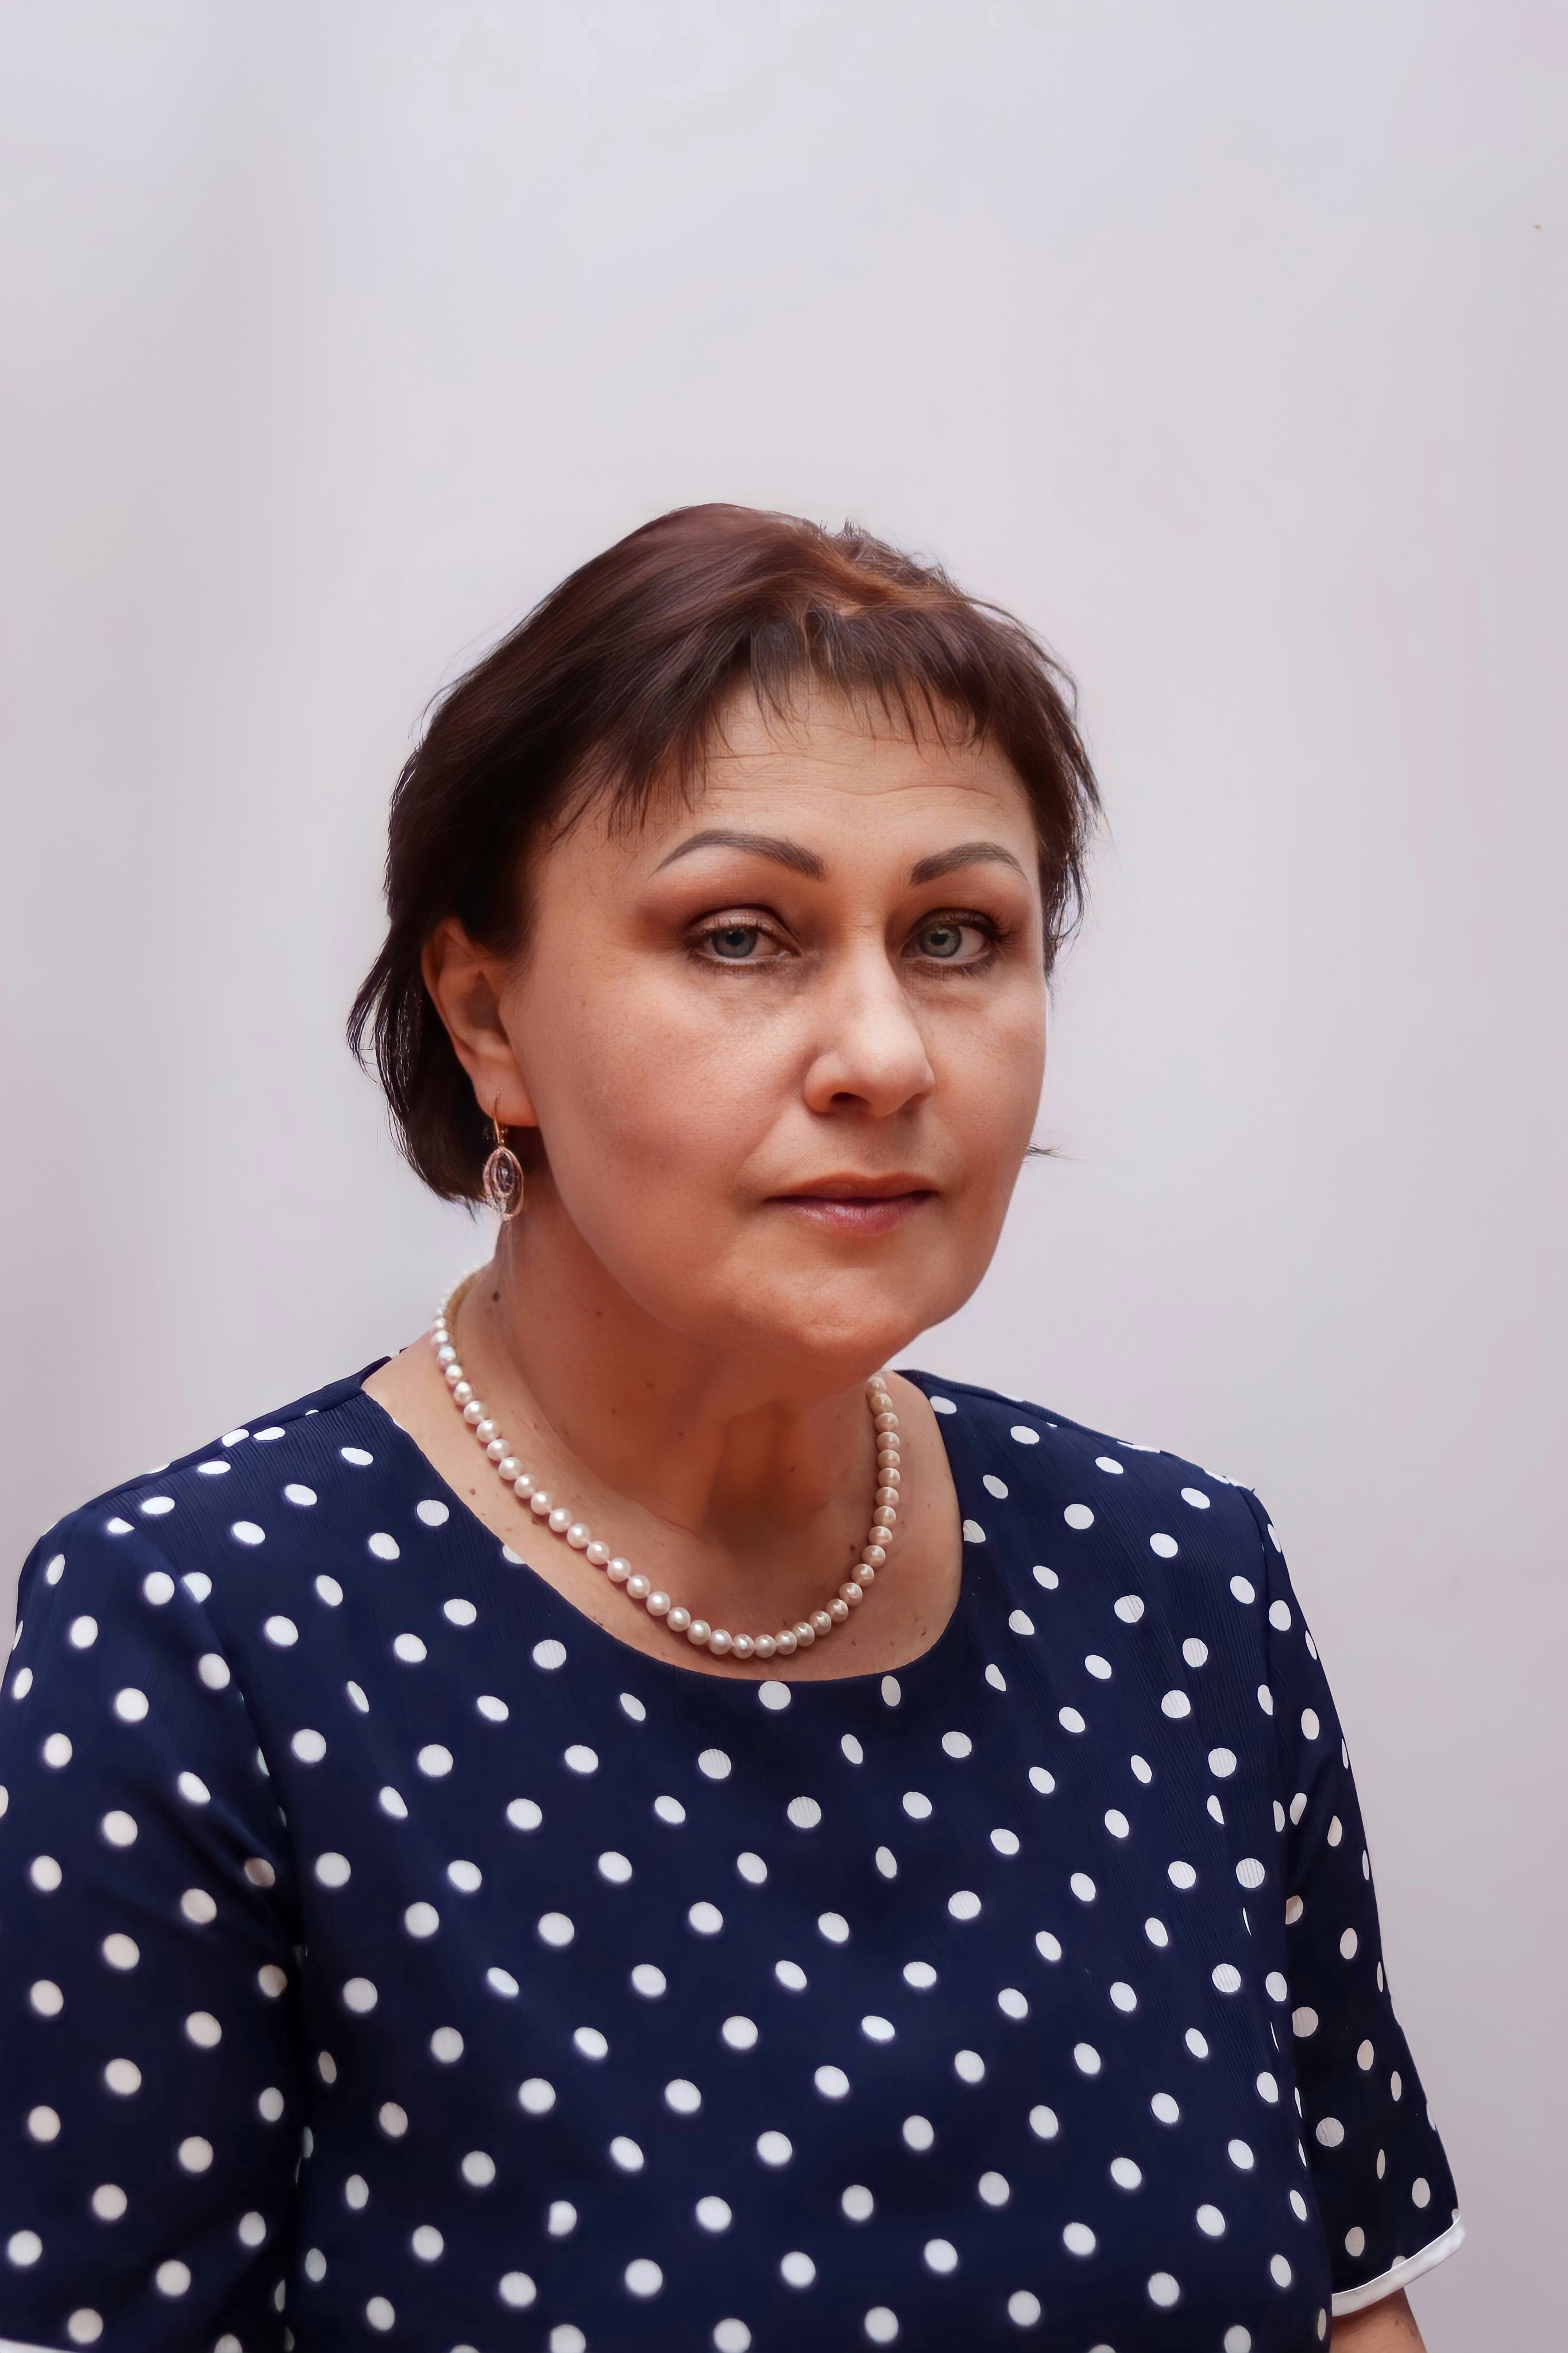 Тагильцева Ольга Николаевна.